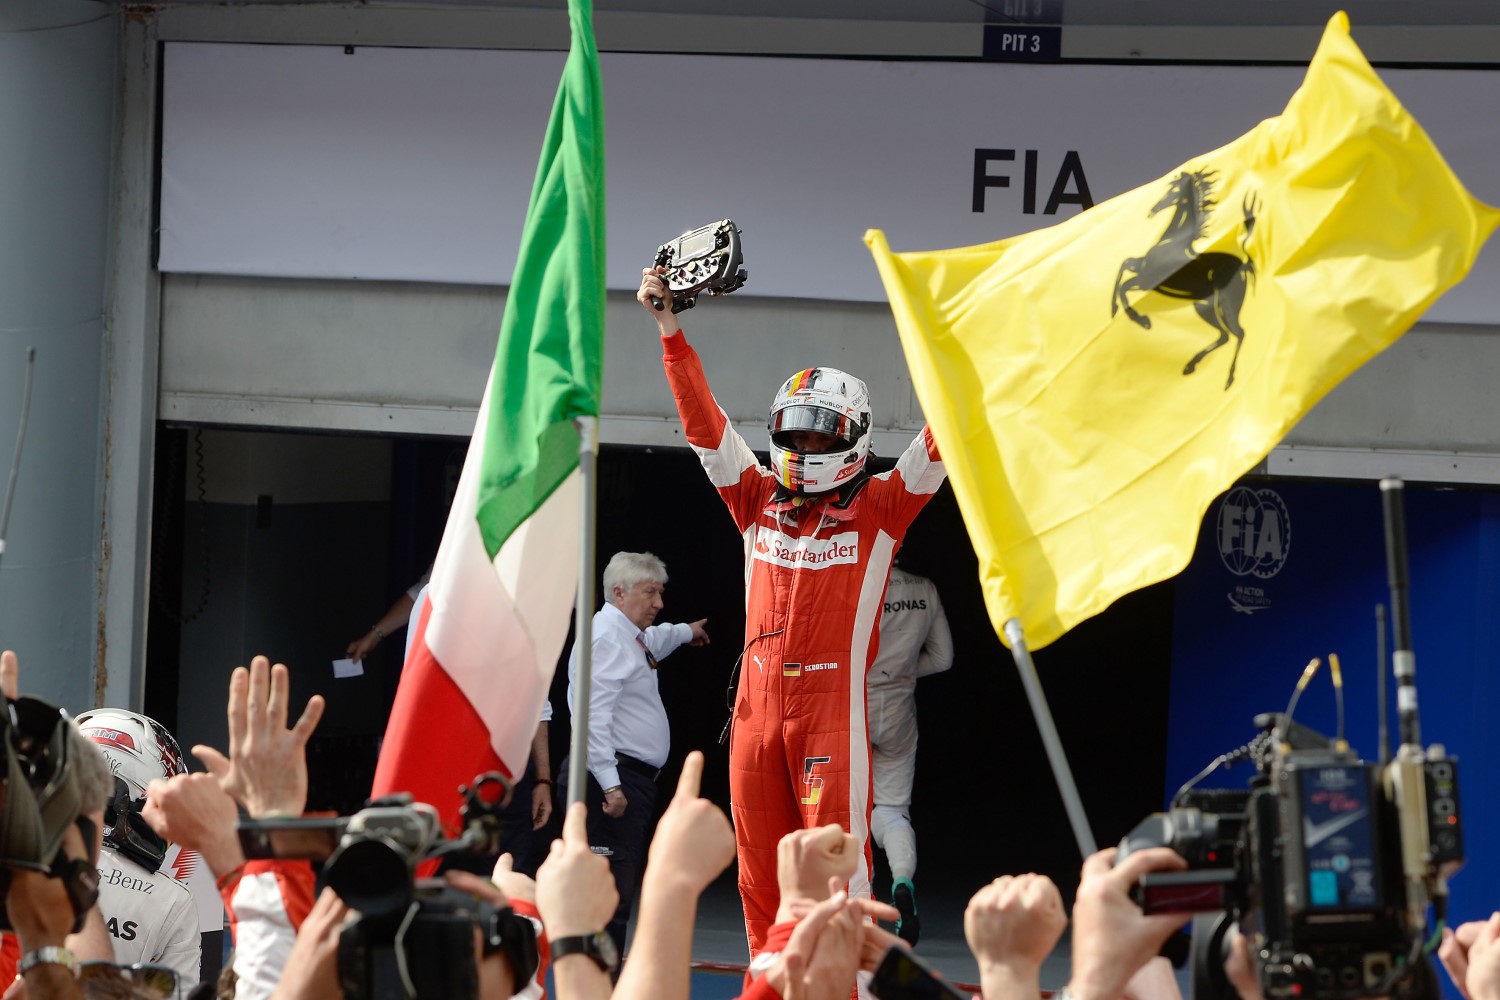 Will the Ferrari flags be waving again in Shanghai?